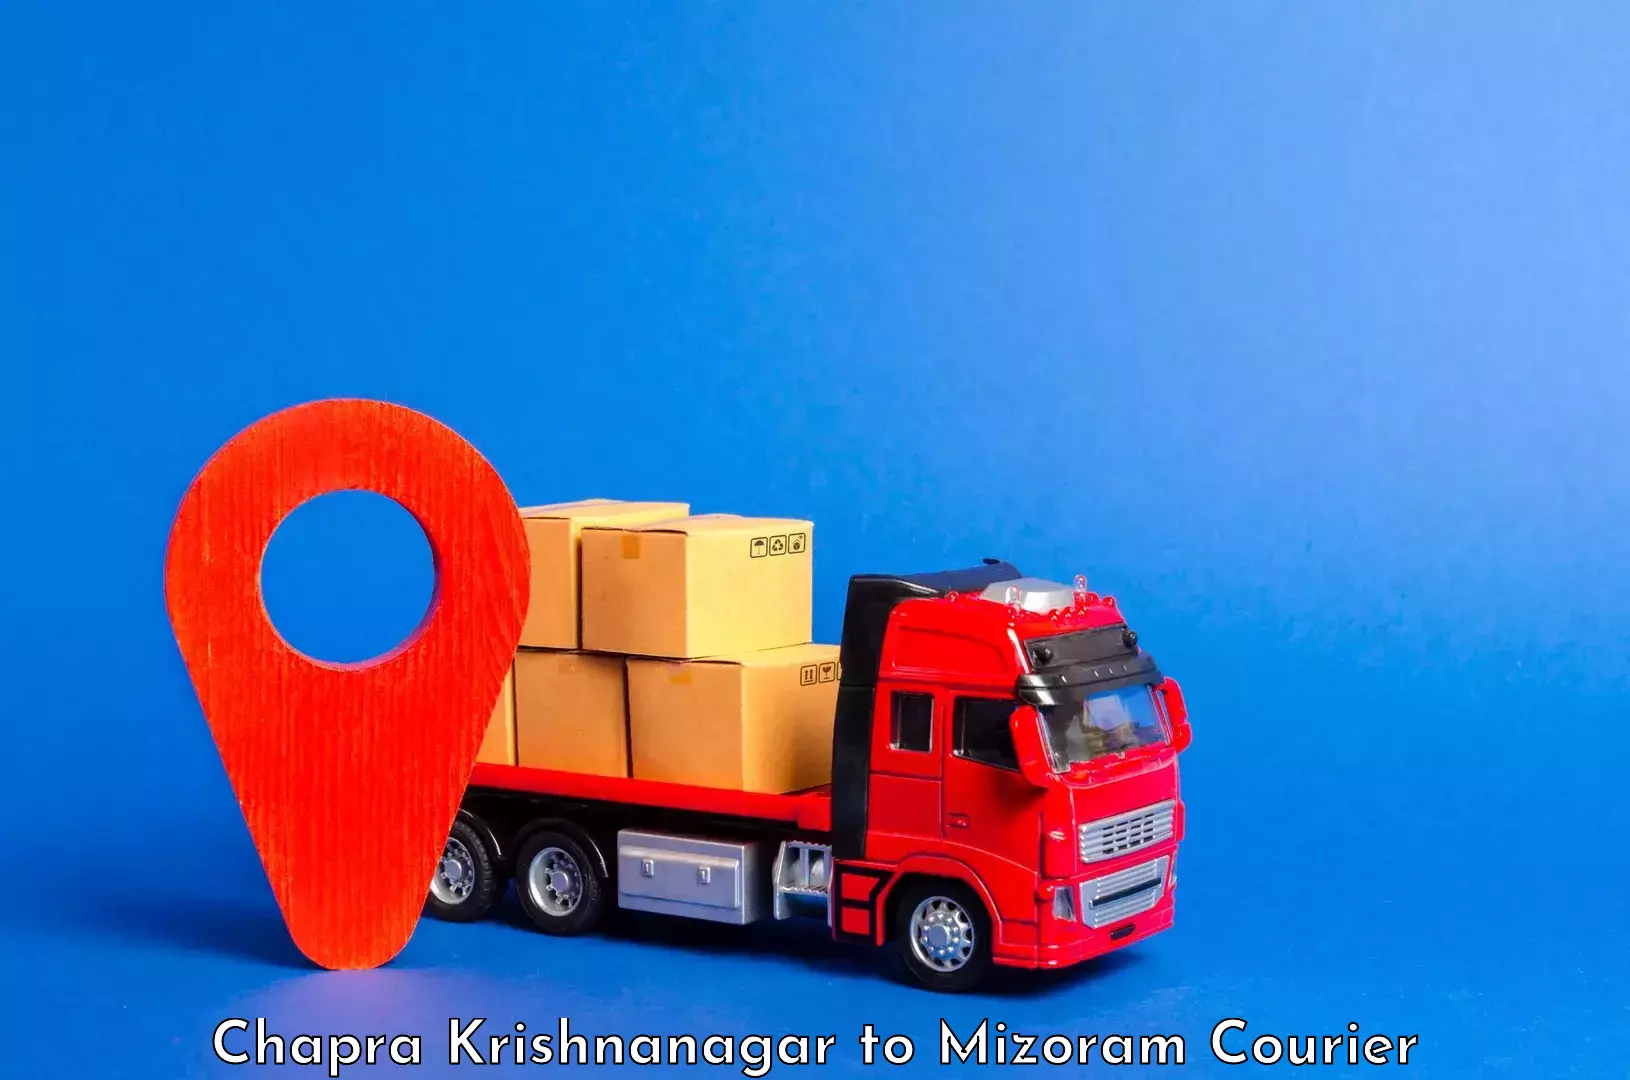 Urban luggage shipping Chapra Krishnanagar to Mizoram